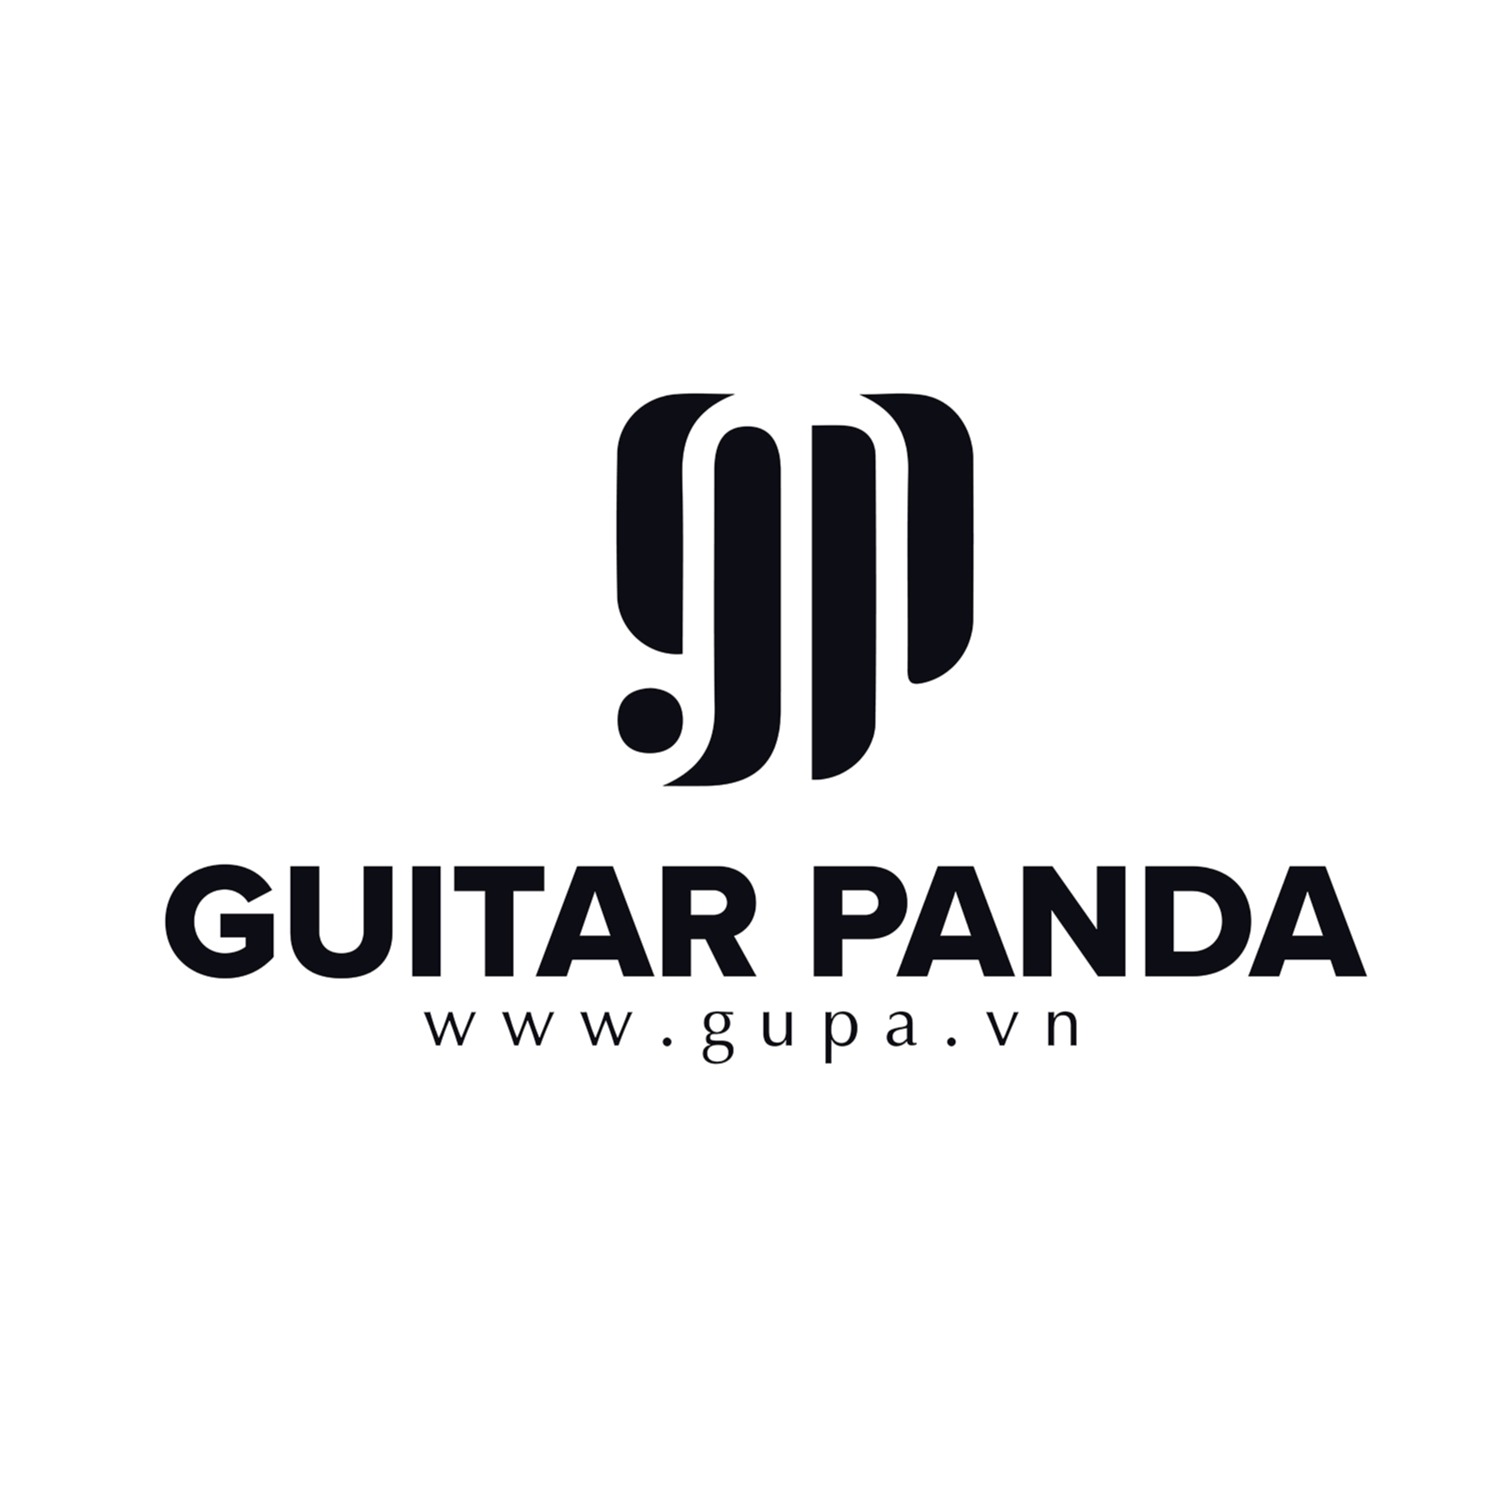 Guitar Panda | shop.gupa.vn